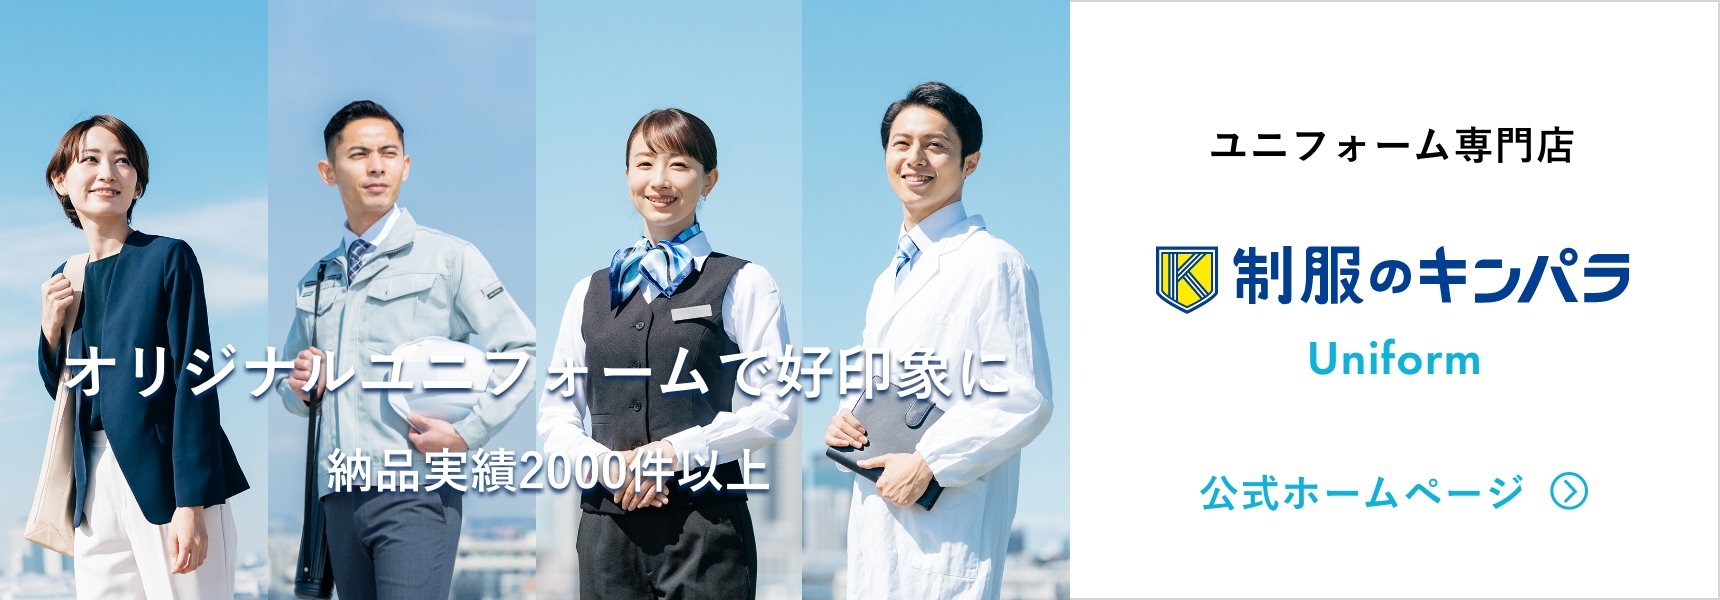 ユニフォーム専門店 制服のキンパラ Uniform 公式サイト